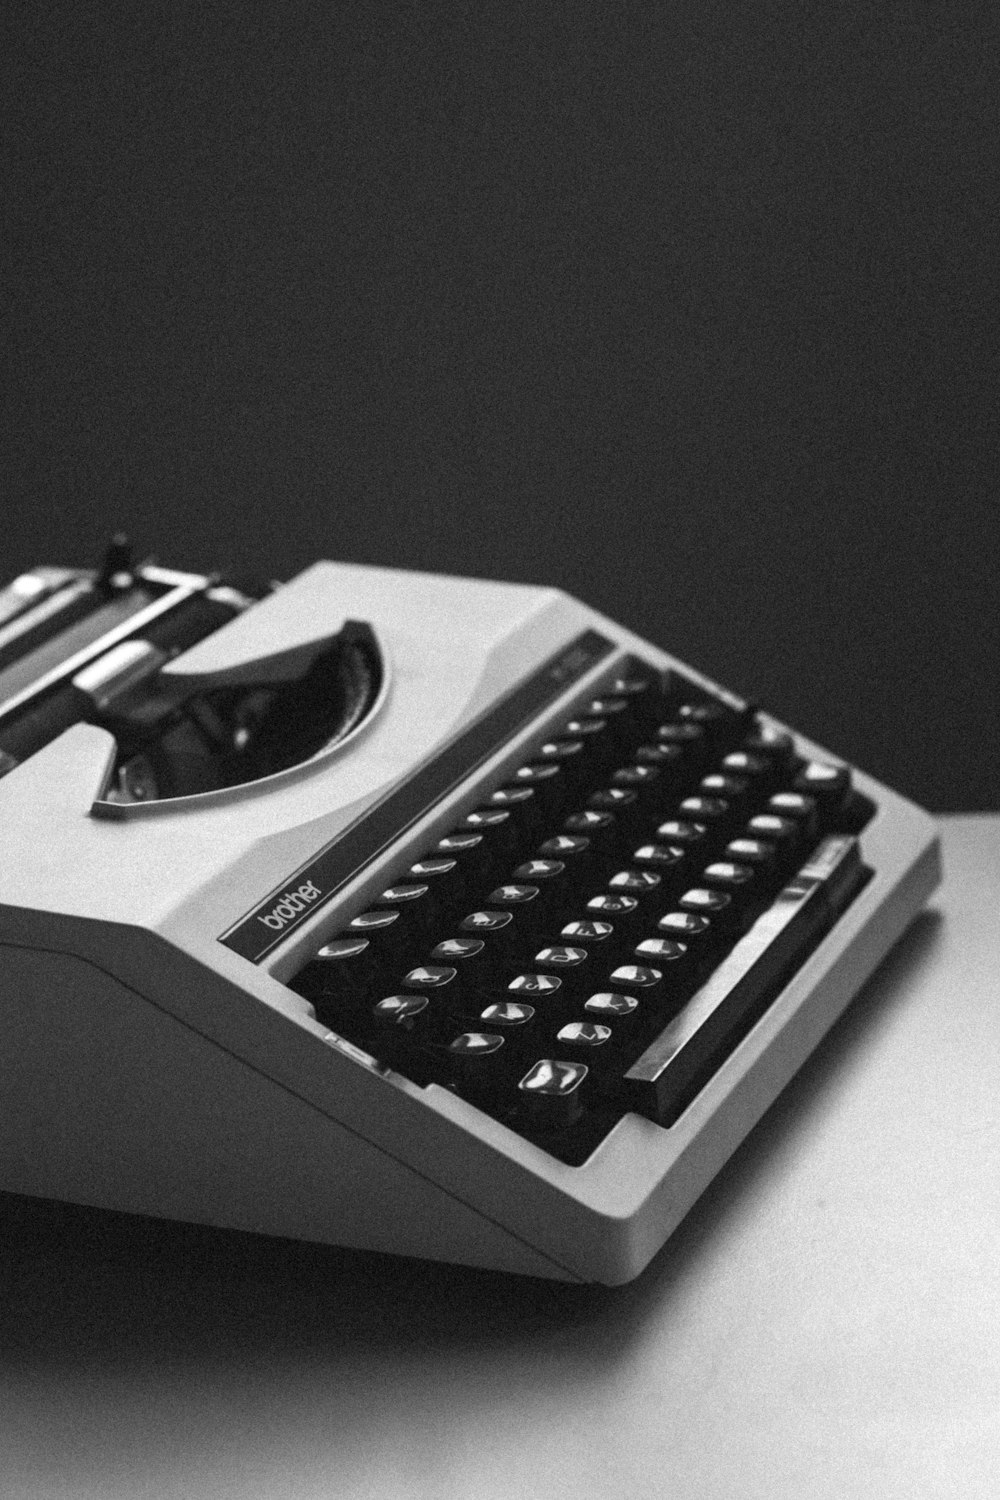 Photographie en gros plan de machine à écrire blanche et noire